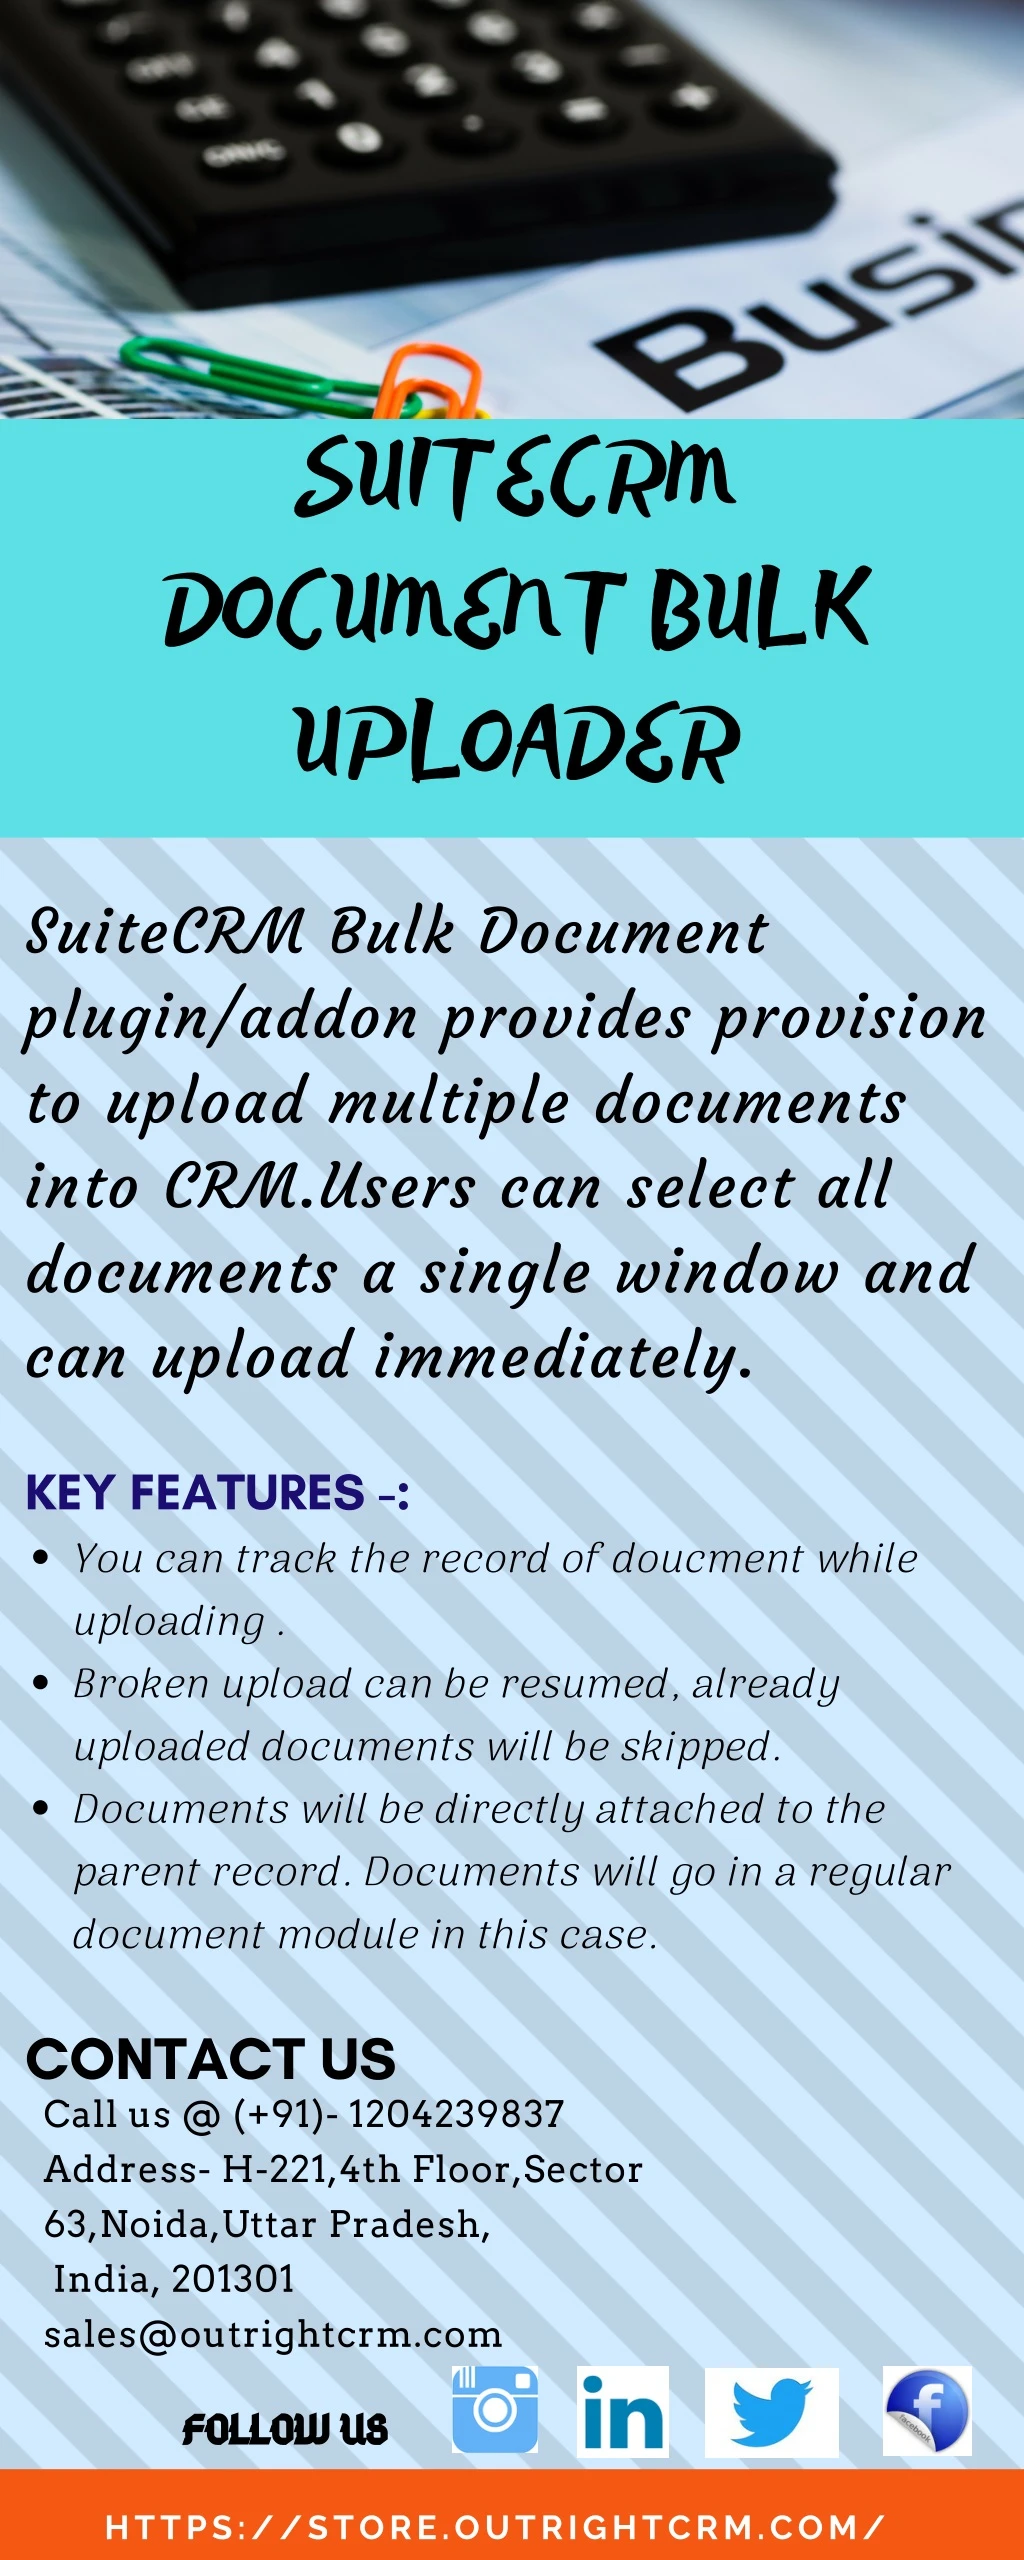 suitecrm document bulk uploader